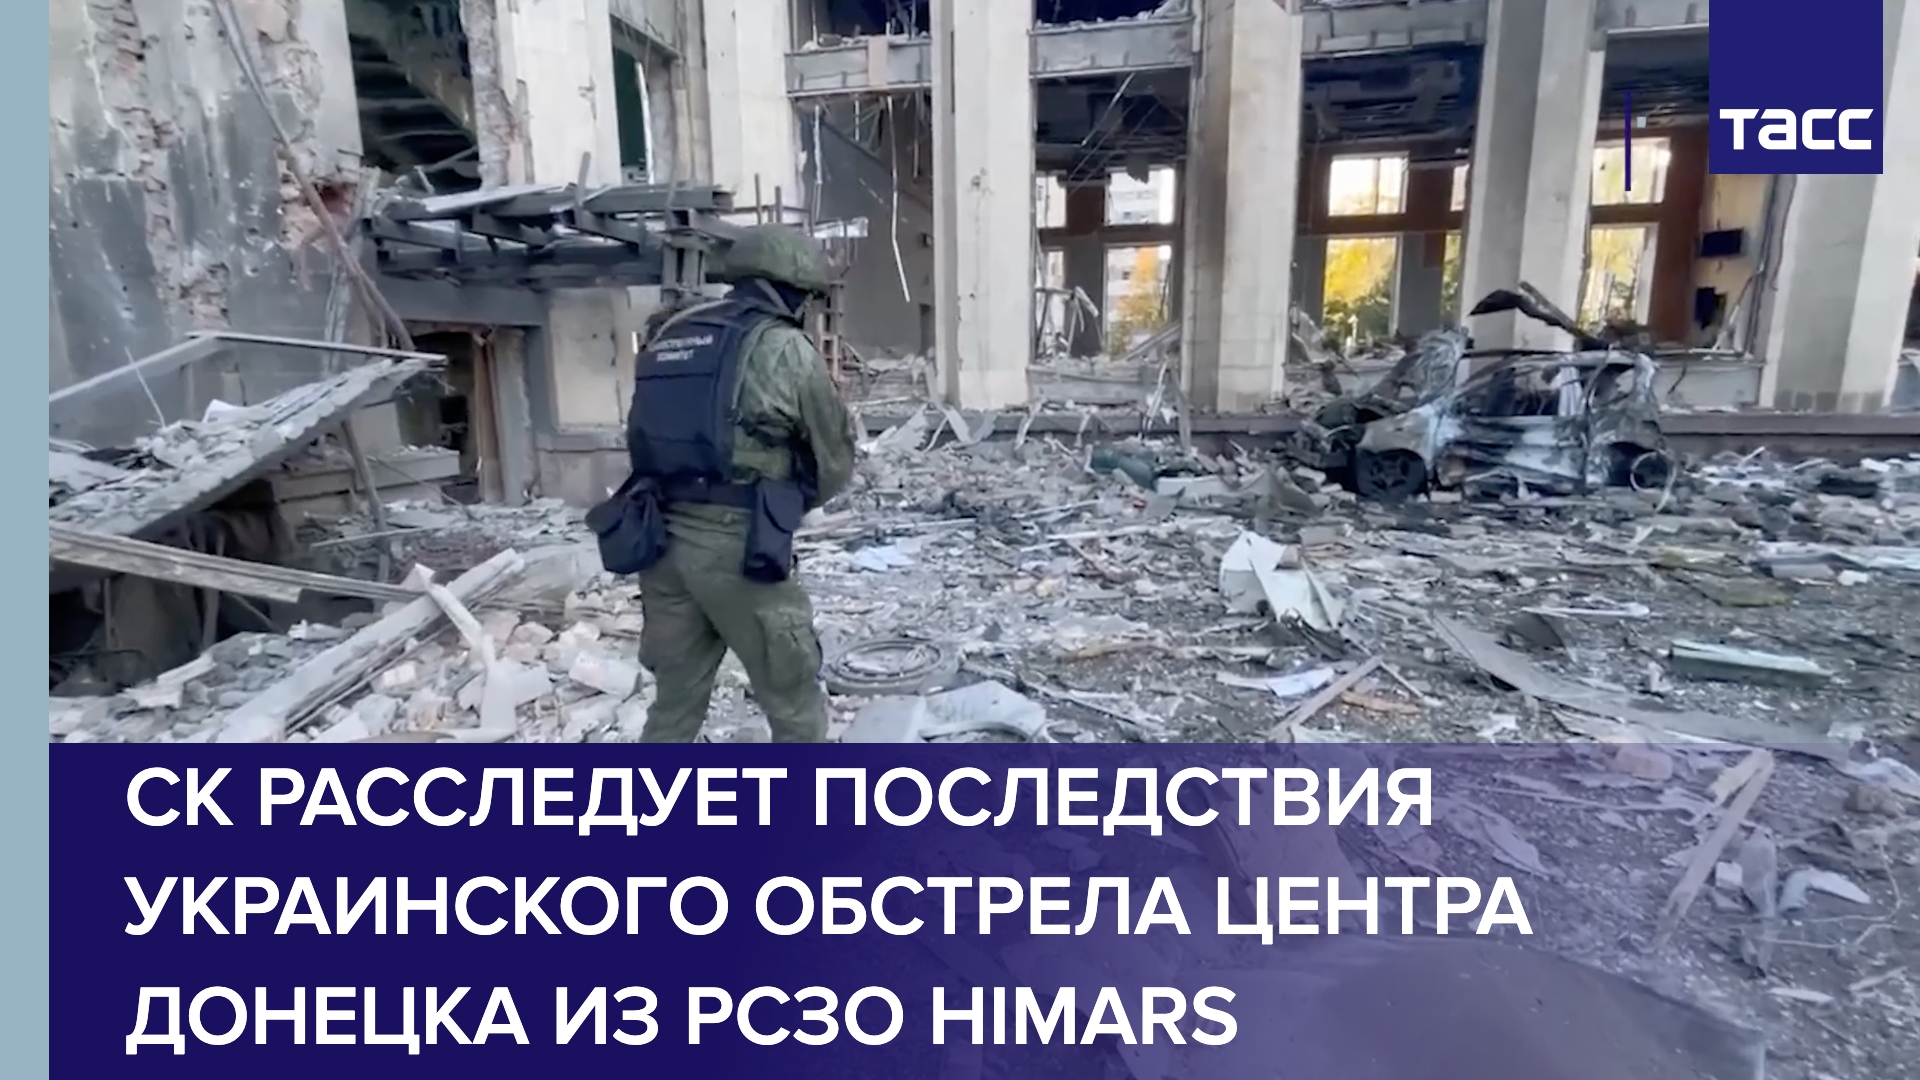 СК расследует последствия украинского обстрела центра Донецка из РСЗО HIMARS